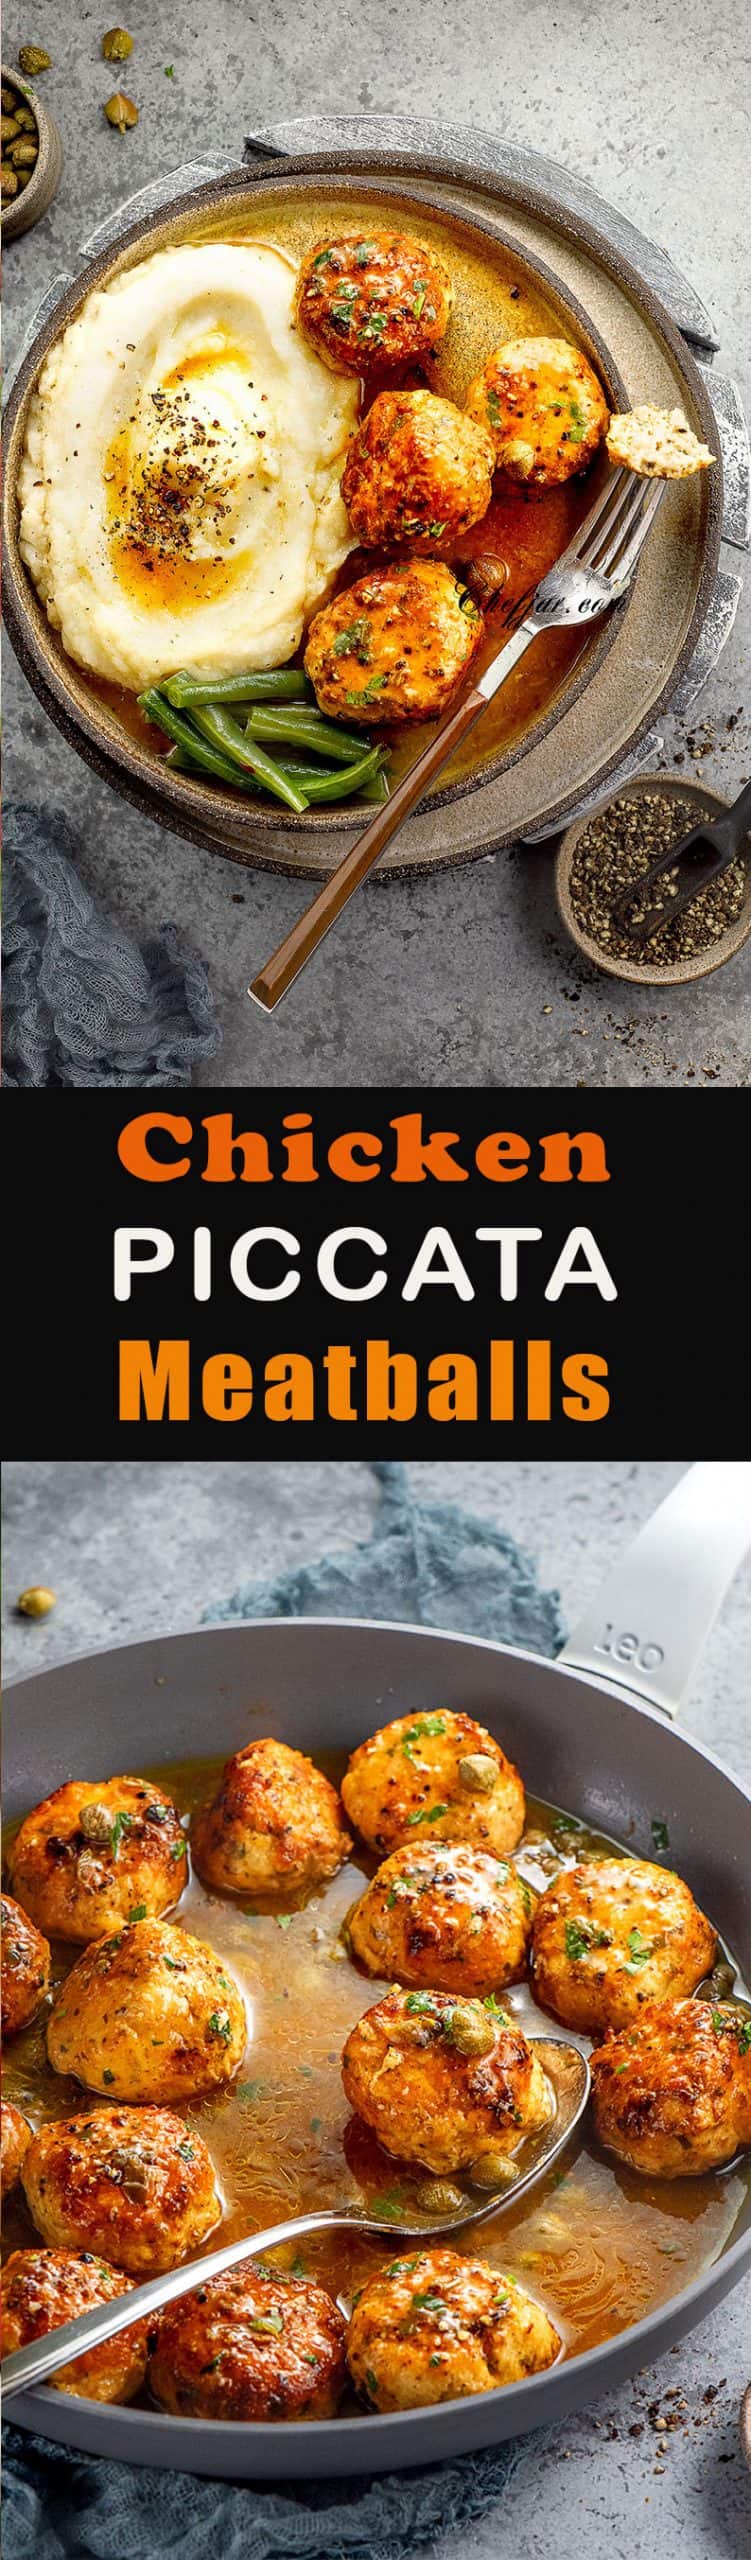 chicken-piccata-meatballs